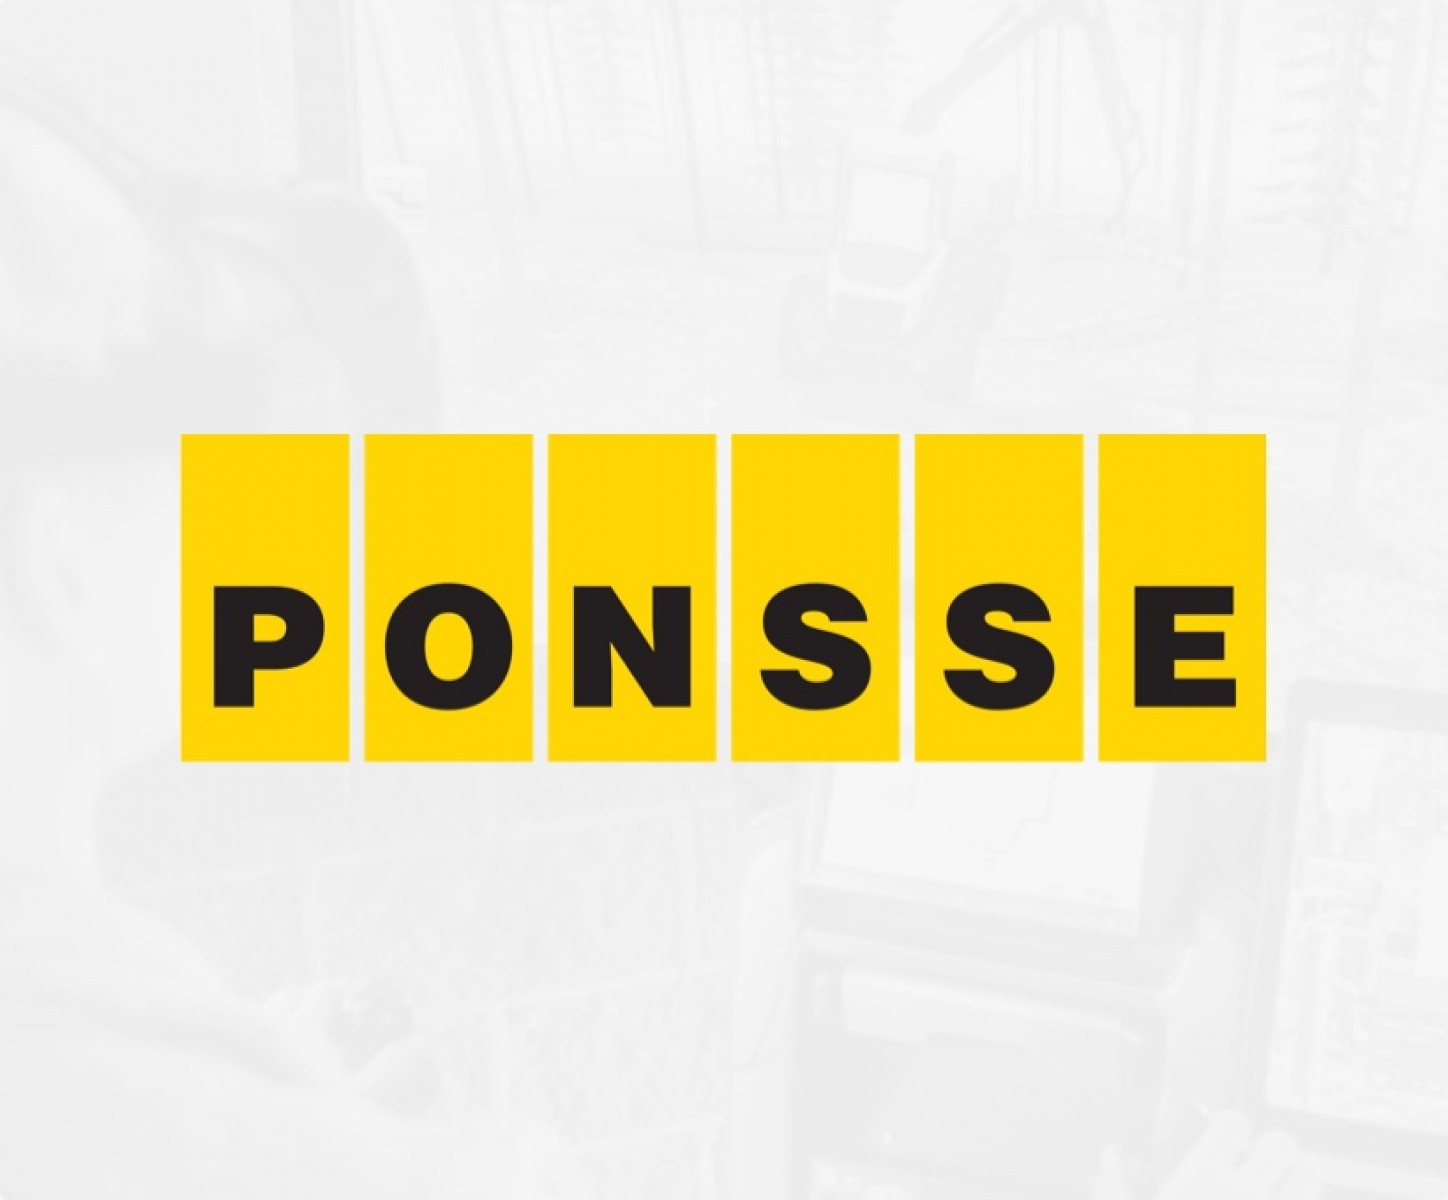 A PONSSE az egyik legelismertebb tőzsdei vállalat Finnországban